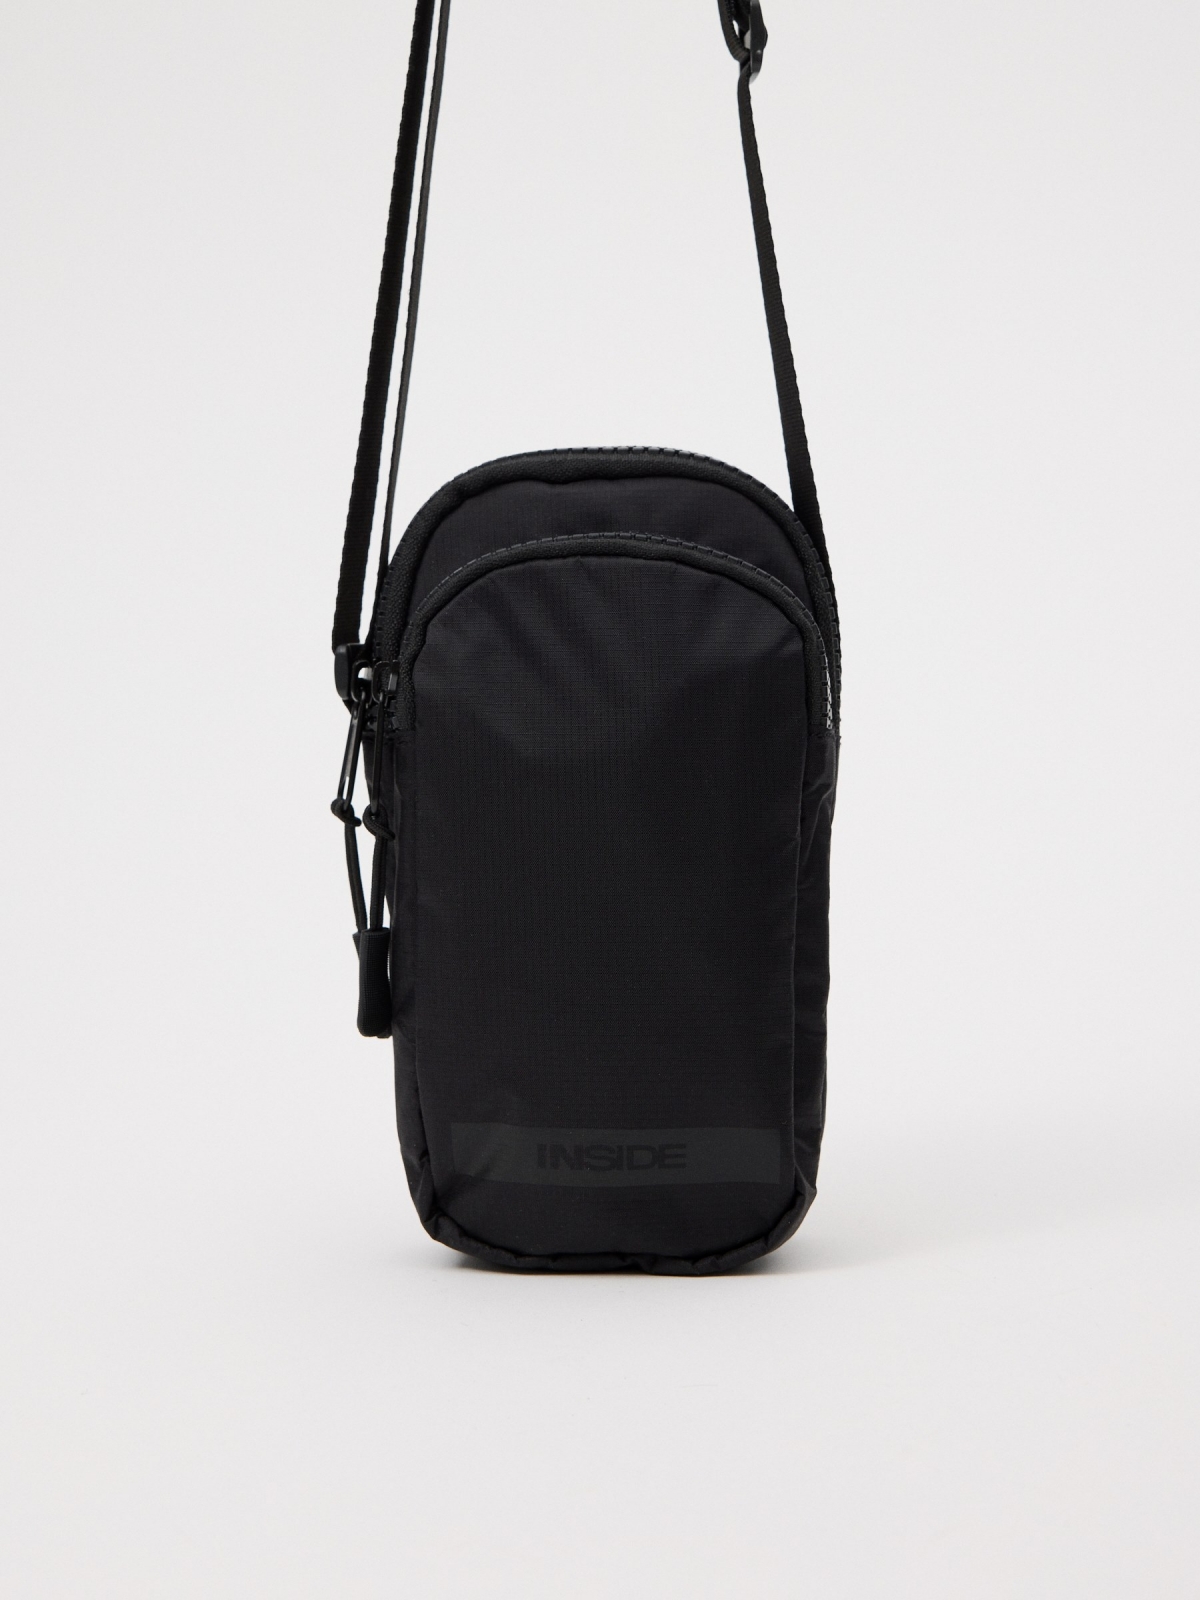 Black smartphone bag black